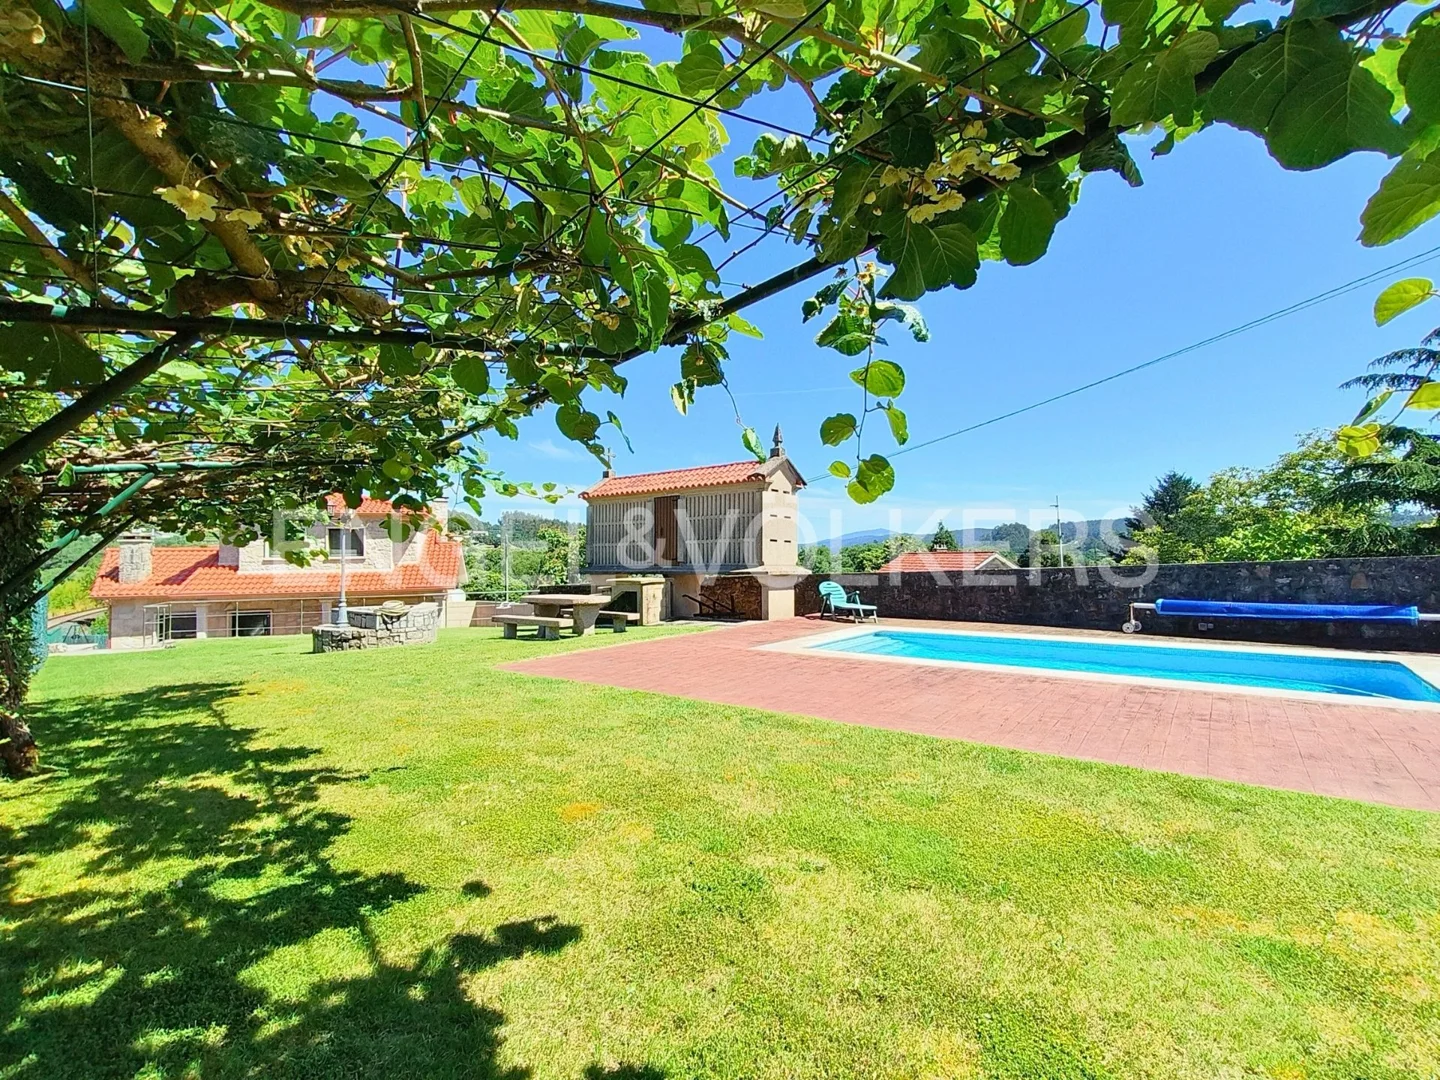 Casa con jardín y piscina a 10 km de Pontevedra